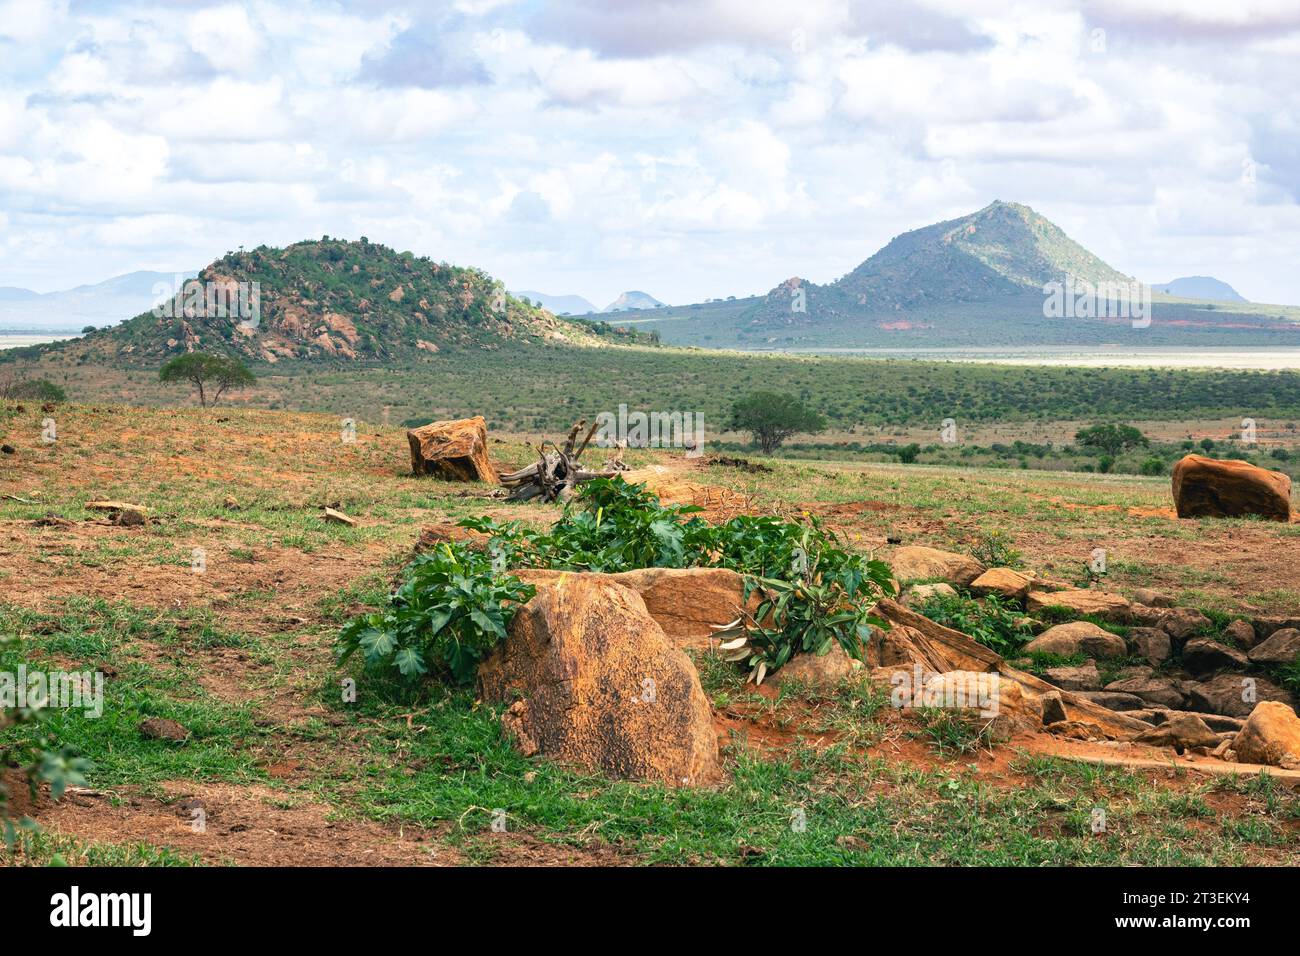 Une vue panoramique d'un point d'eau dans les paysages de prairies de savane du parc national de Tsavo East, au Kenya Banque D'Images